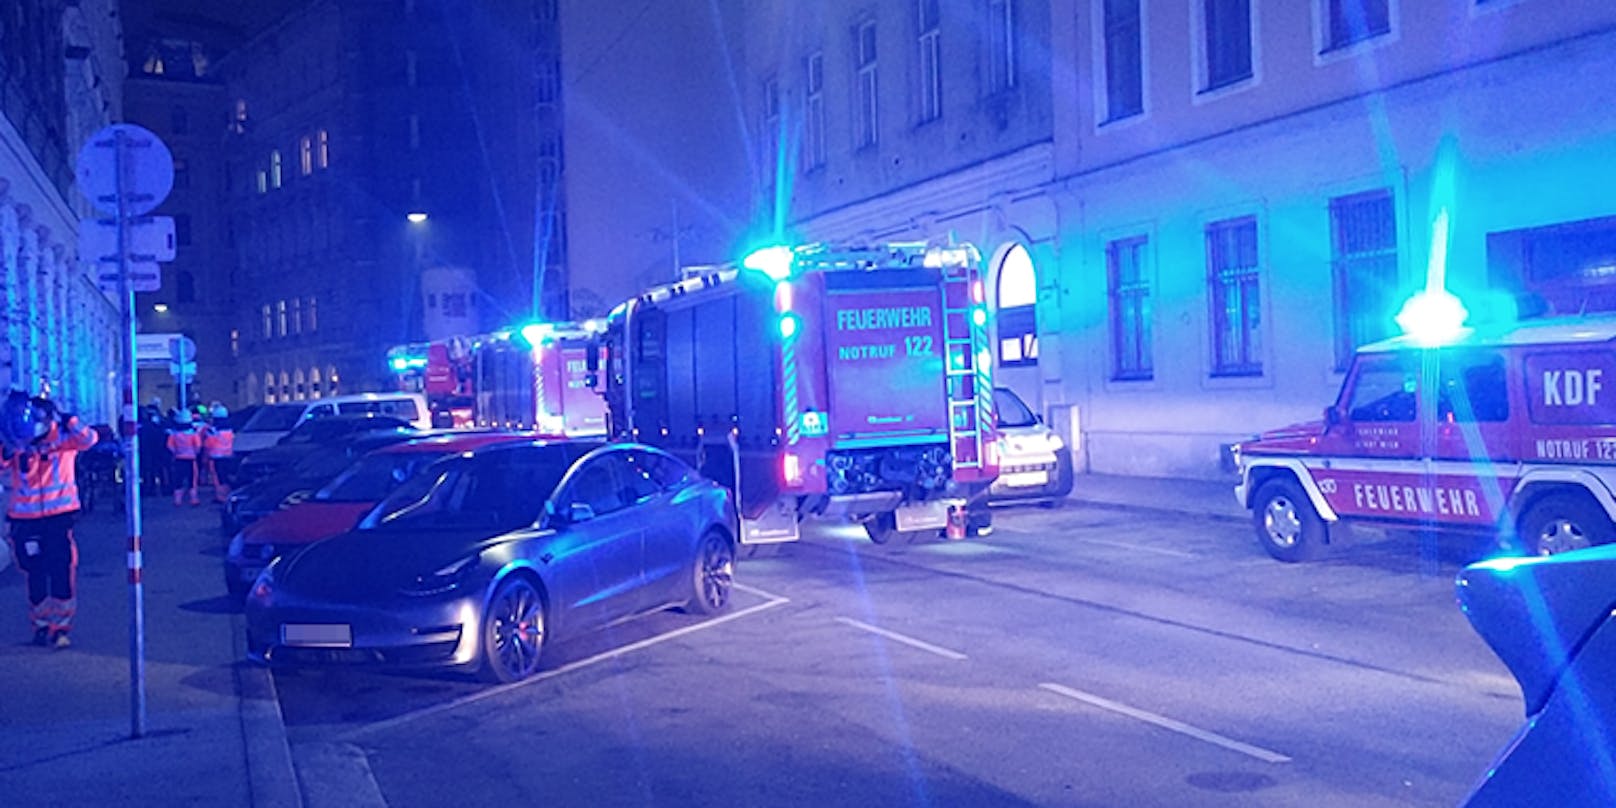 Samstagabend brannte es in einem Wohnheim in Wien-Leopoldstadt